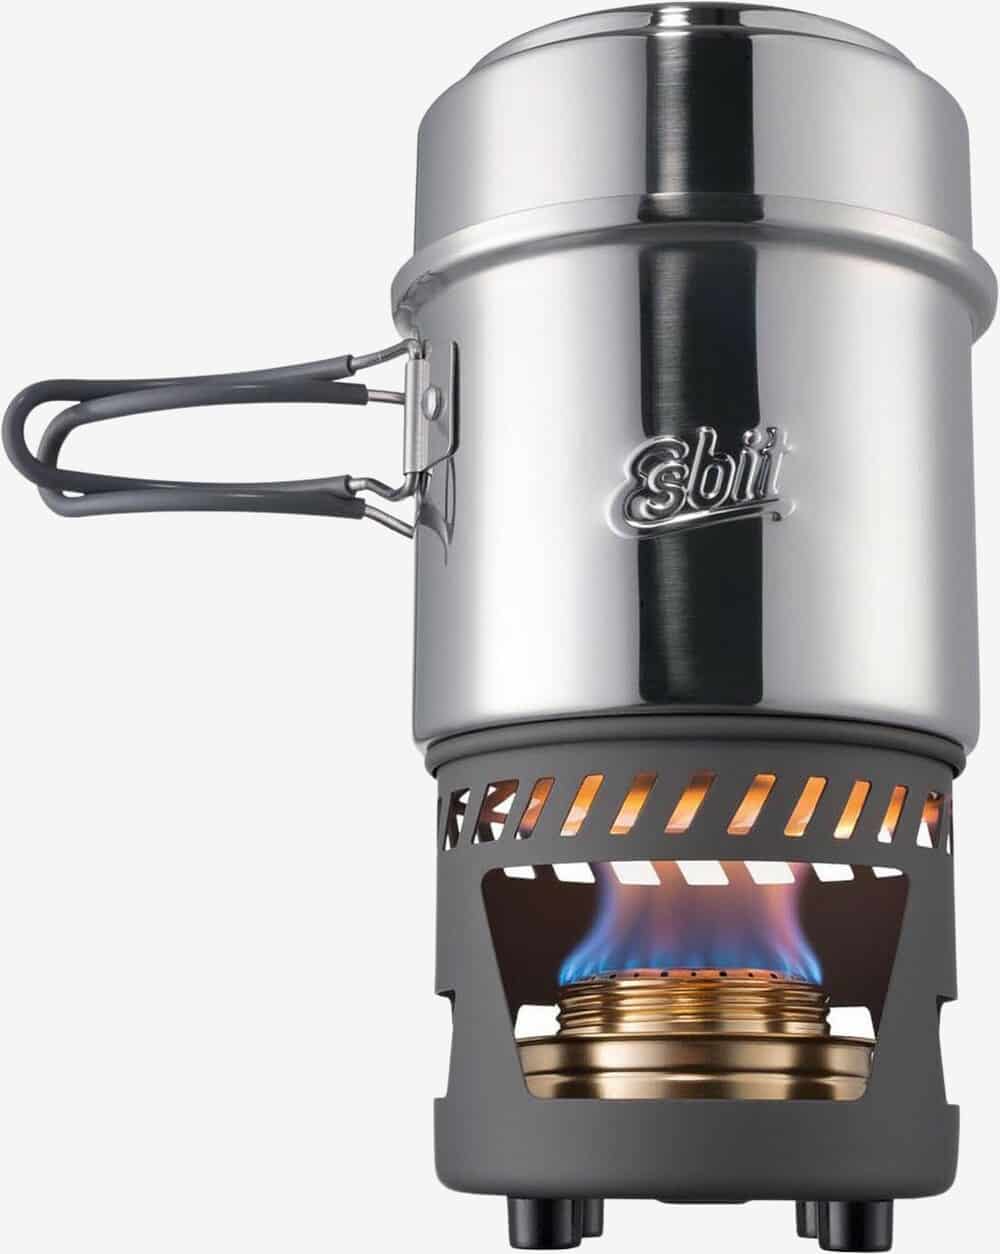 Se Esbit - Kogesæt med spritbrænder i rustfrit stål hos Friluft.dk